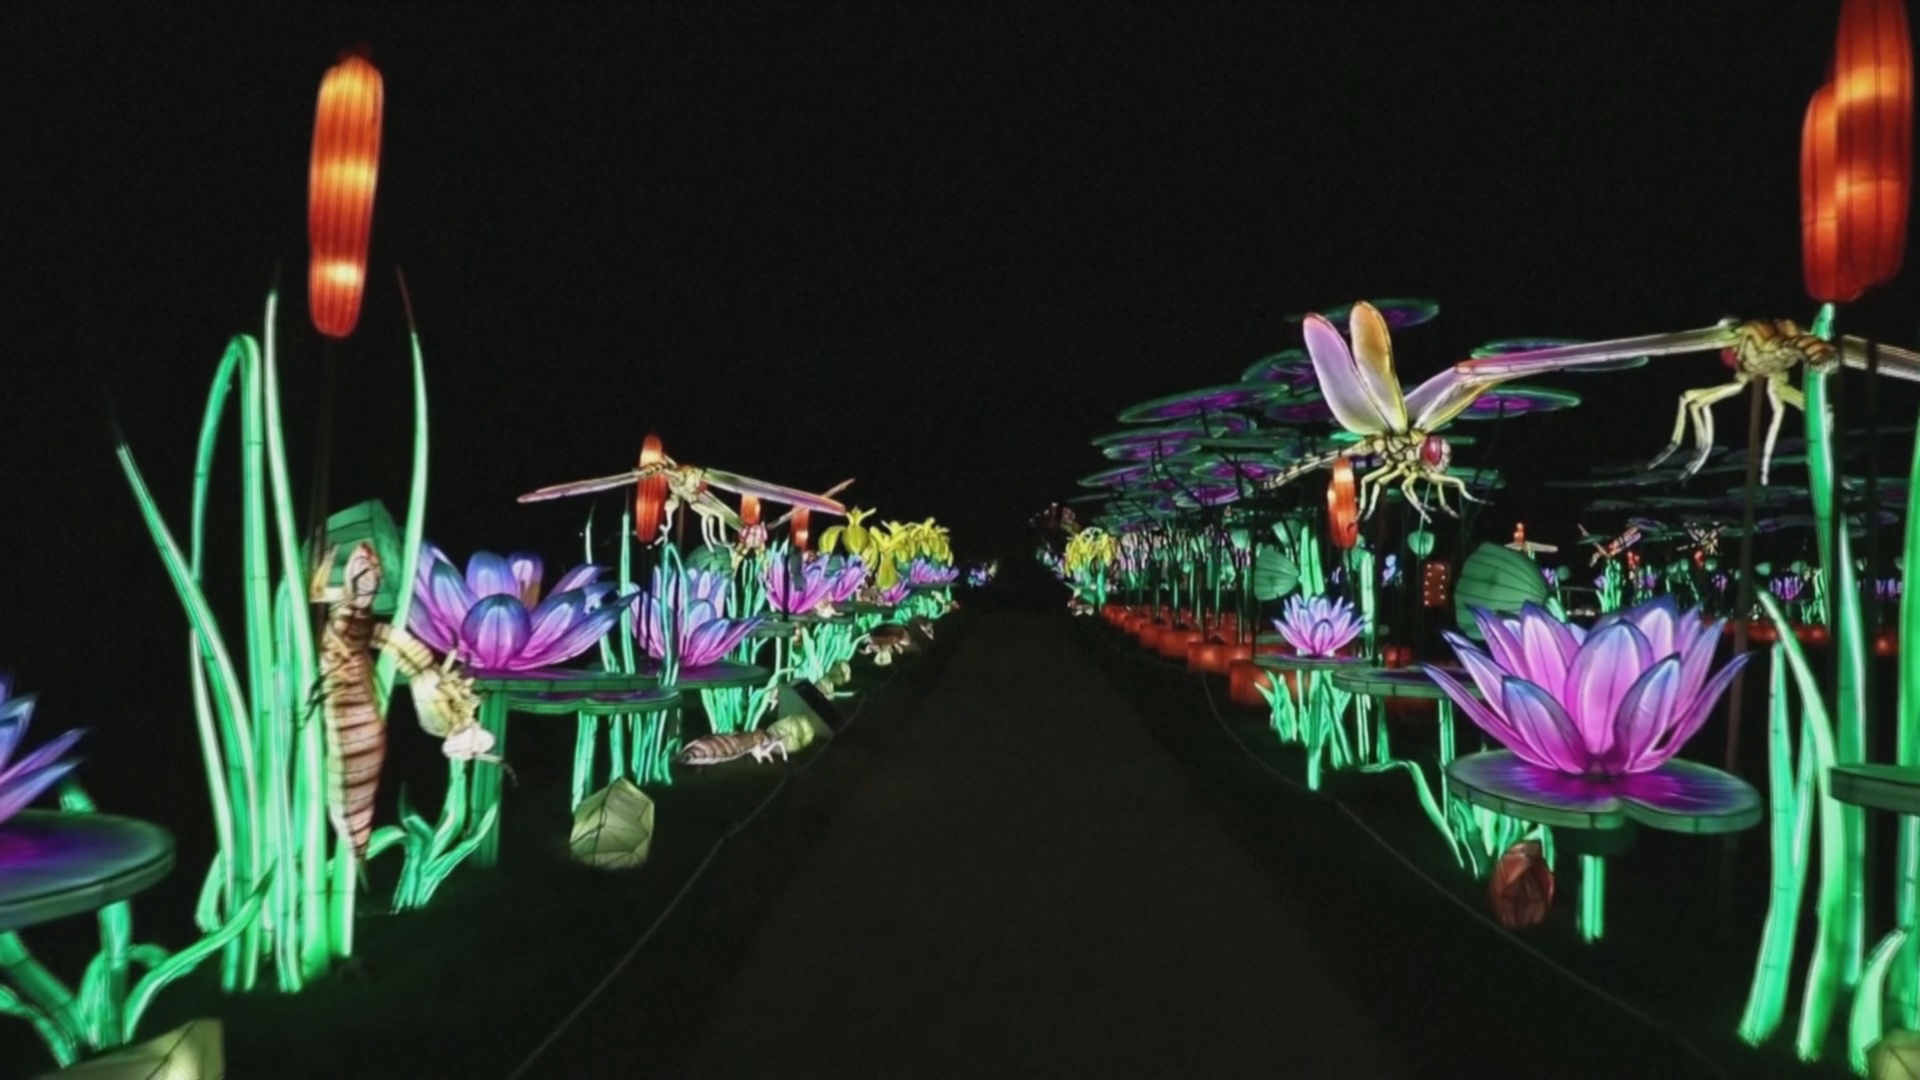 Гигантские светящиеся насекомые украсили сад в Париже